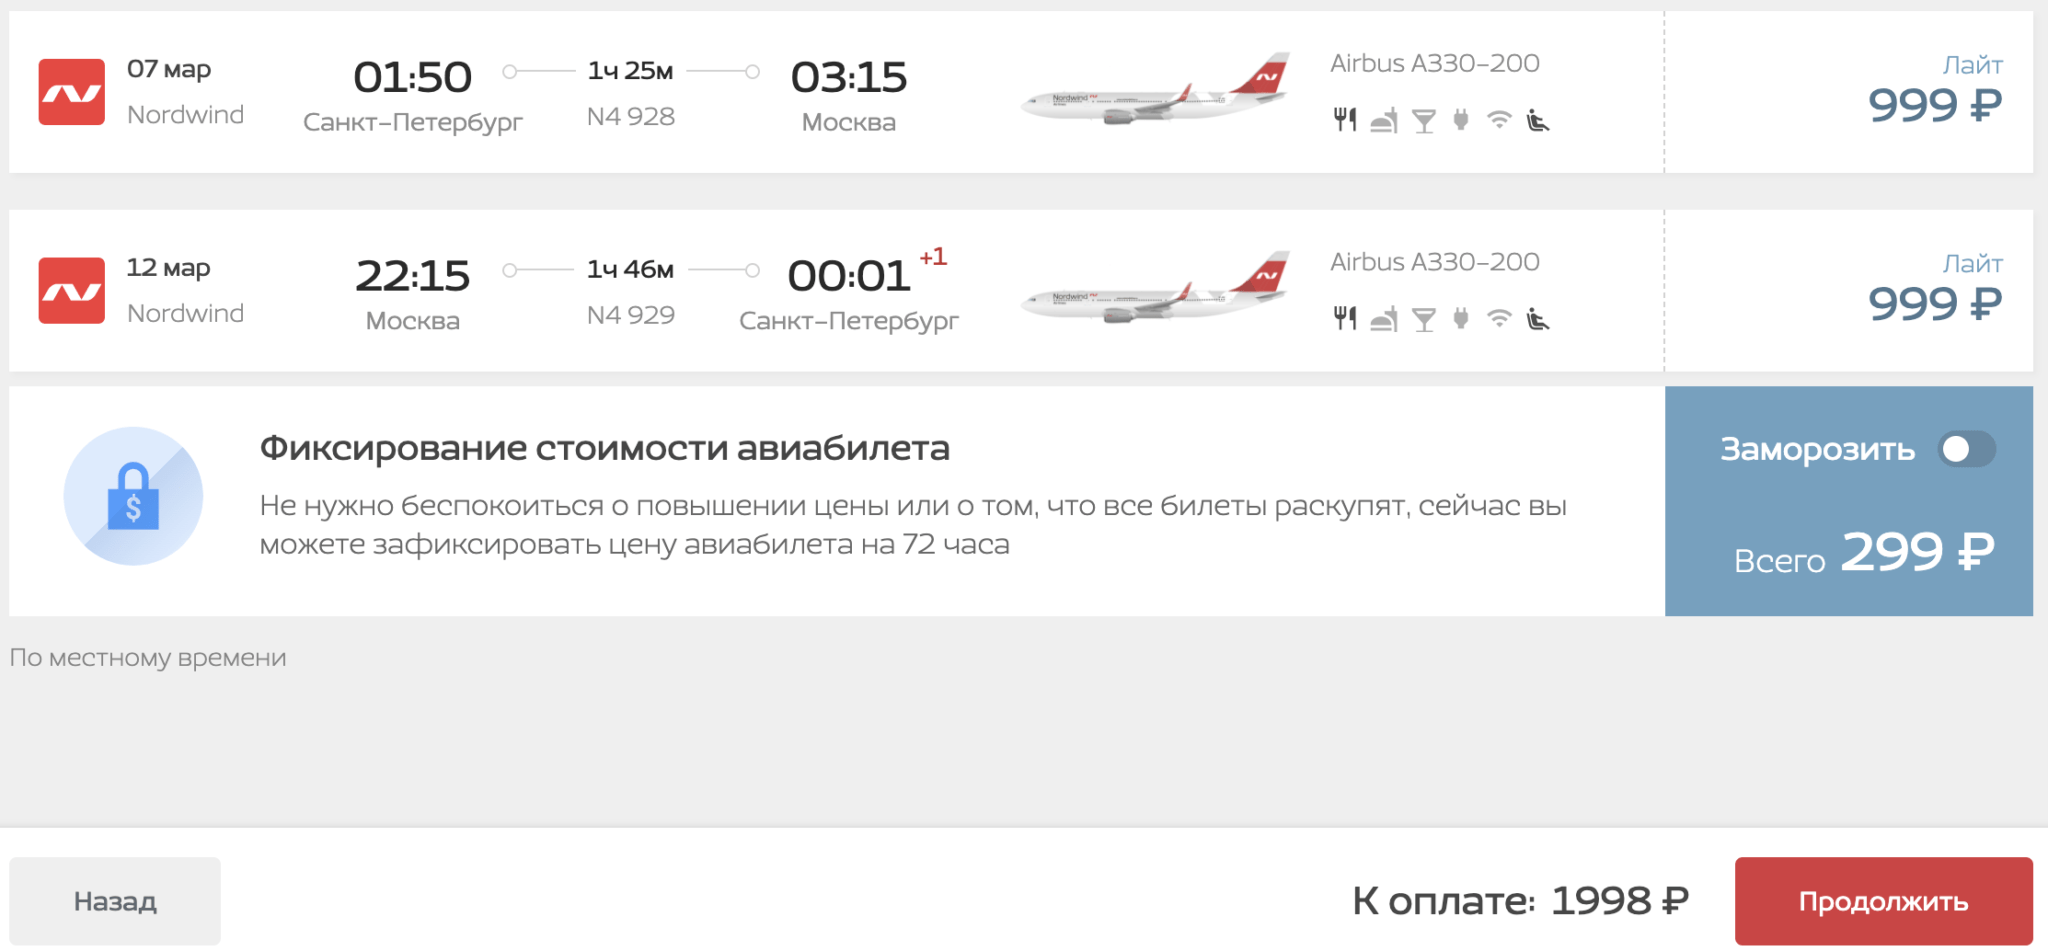 Летаем с Nordwind из Москвы в СПб или наоборот за 1998₽ туда-обратно